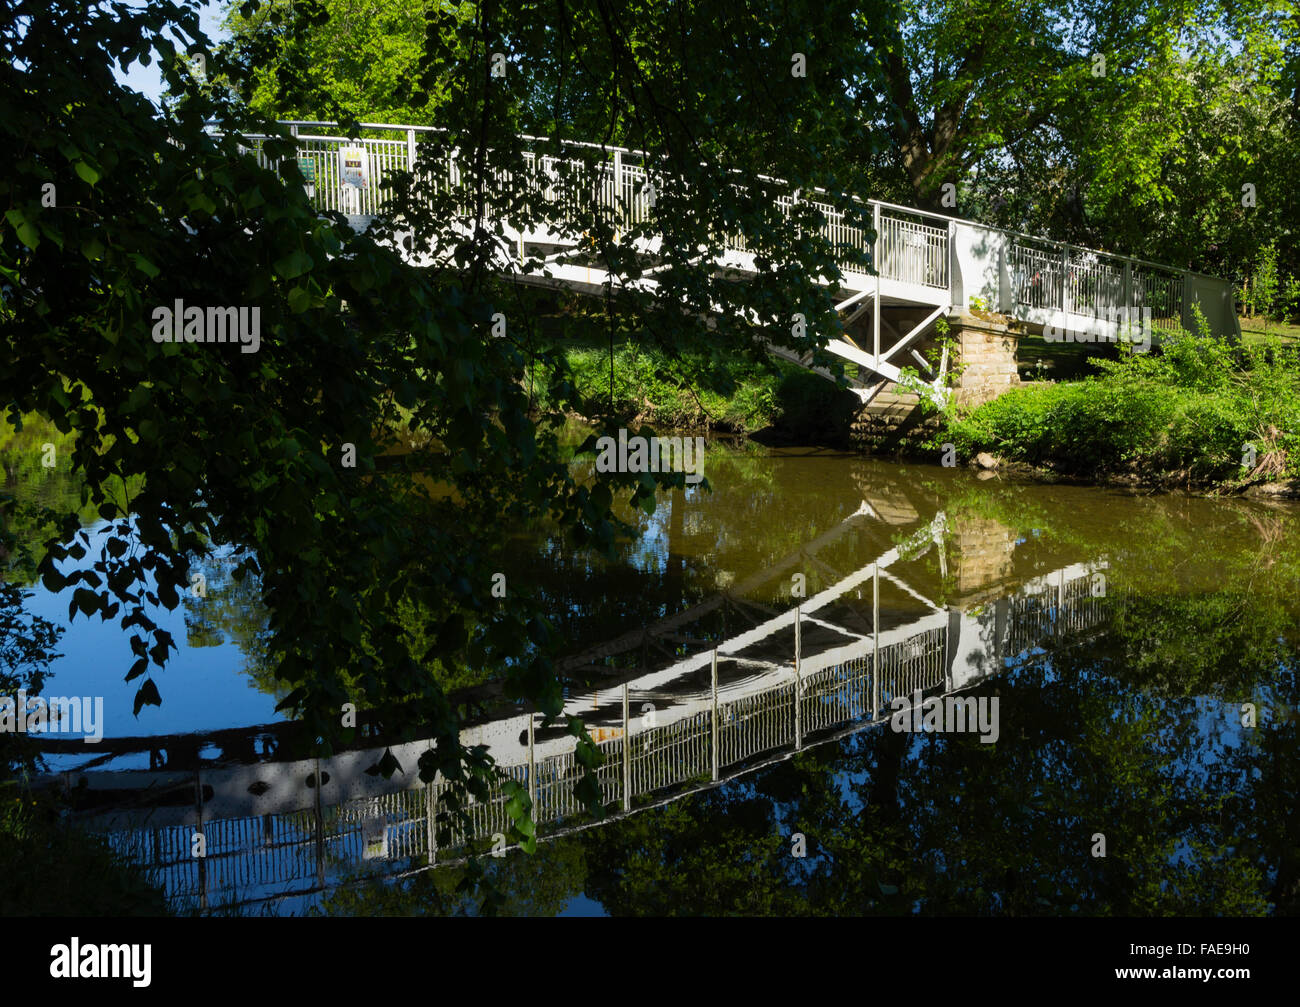 Hawick, Scottish Borders - Wilton Park, bridge over River Teviot. Stock Photo